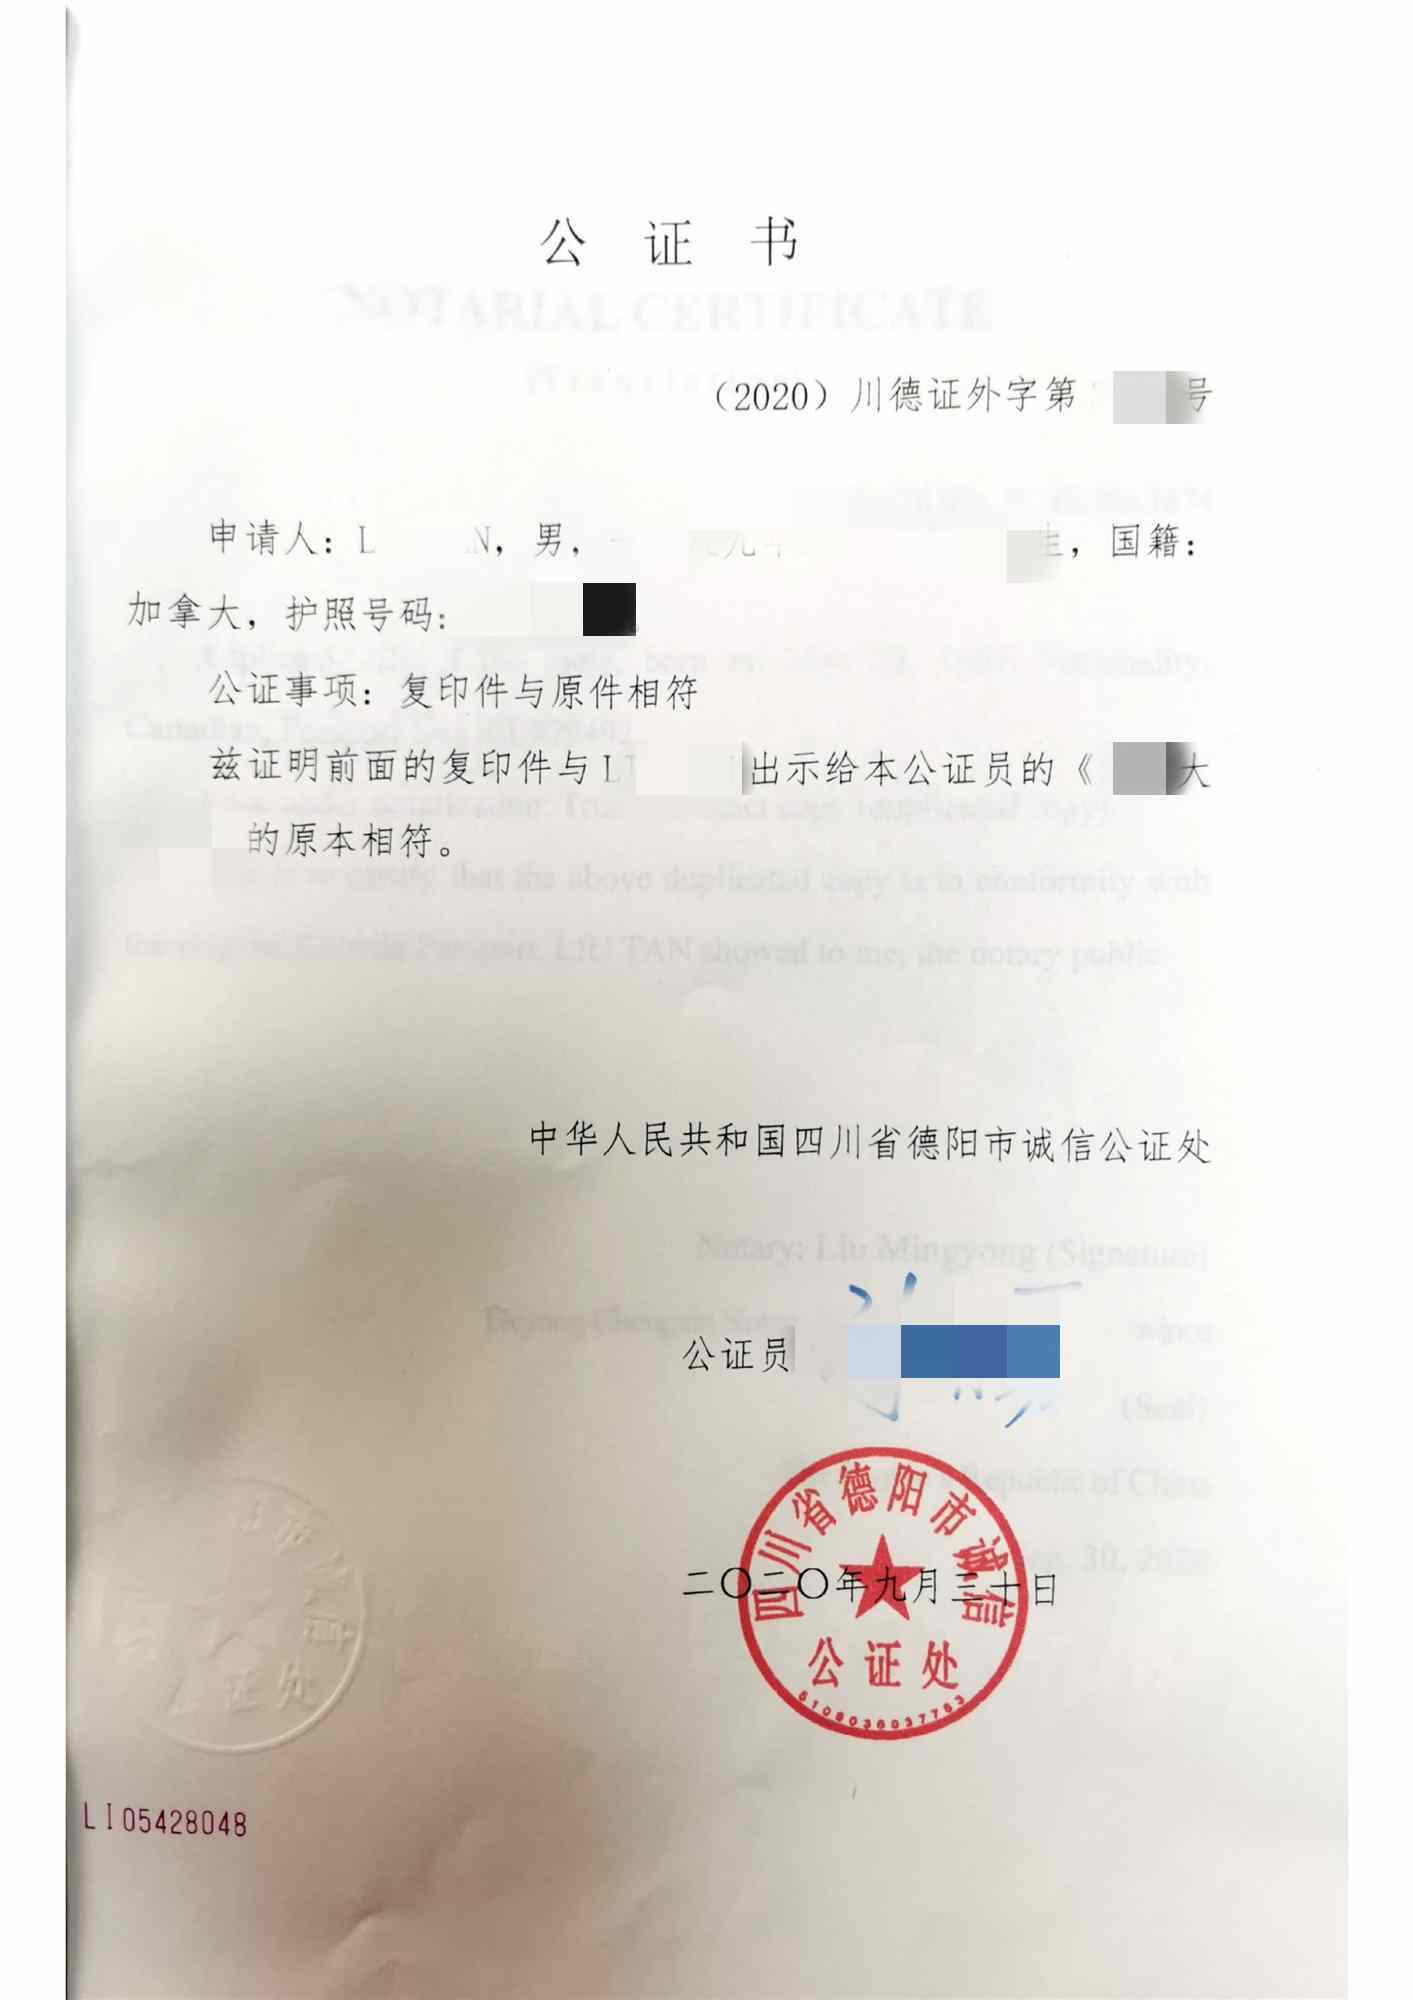 中国结婚证英国使用双认证办理攻略学到不少新知识,分享给大家